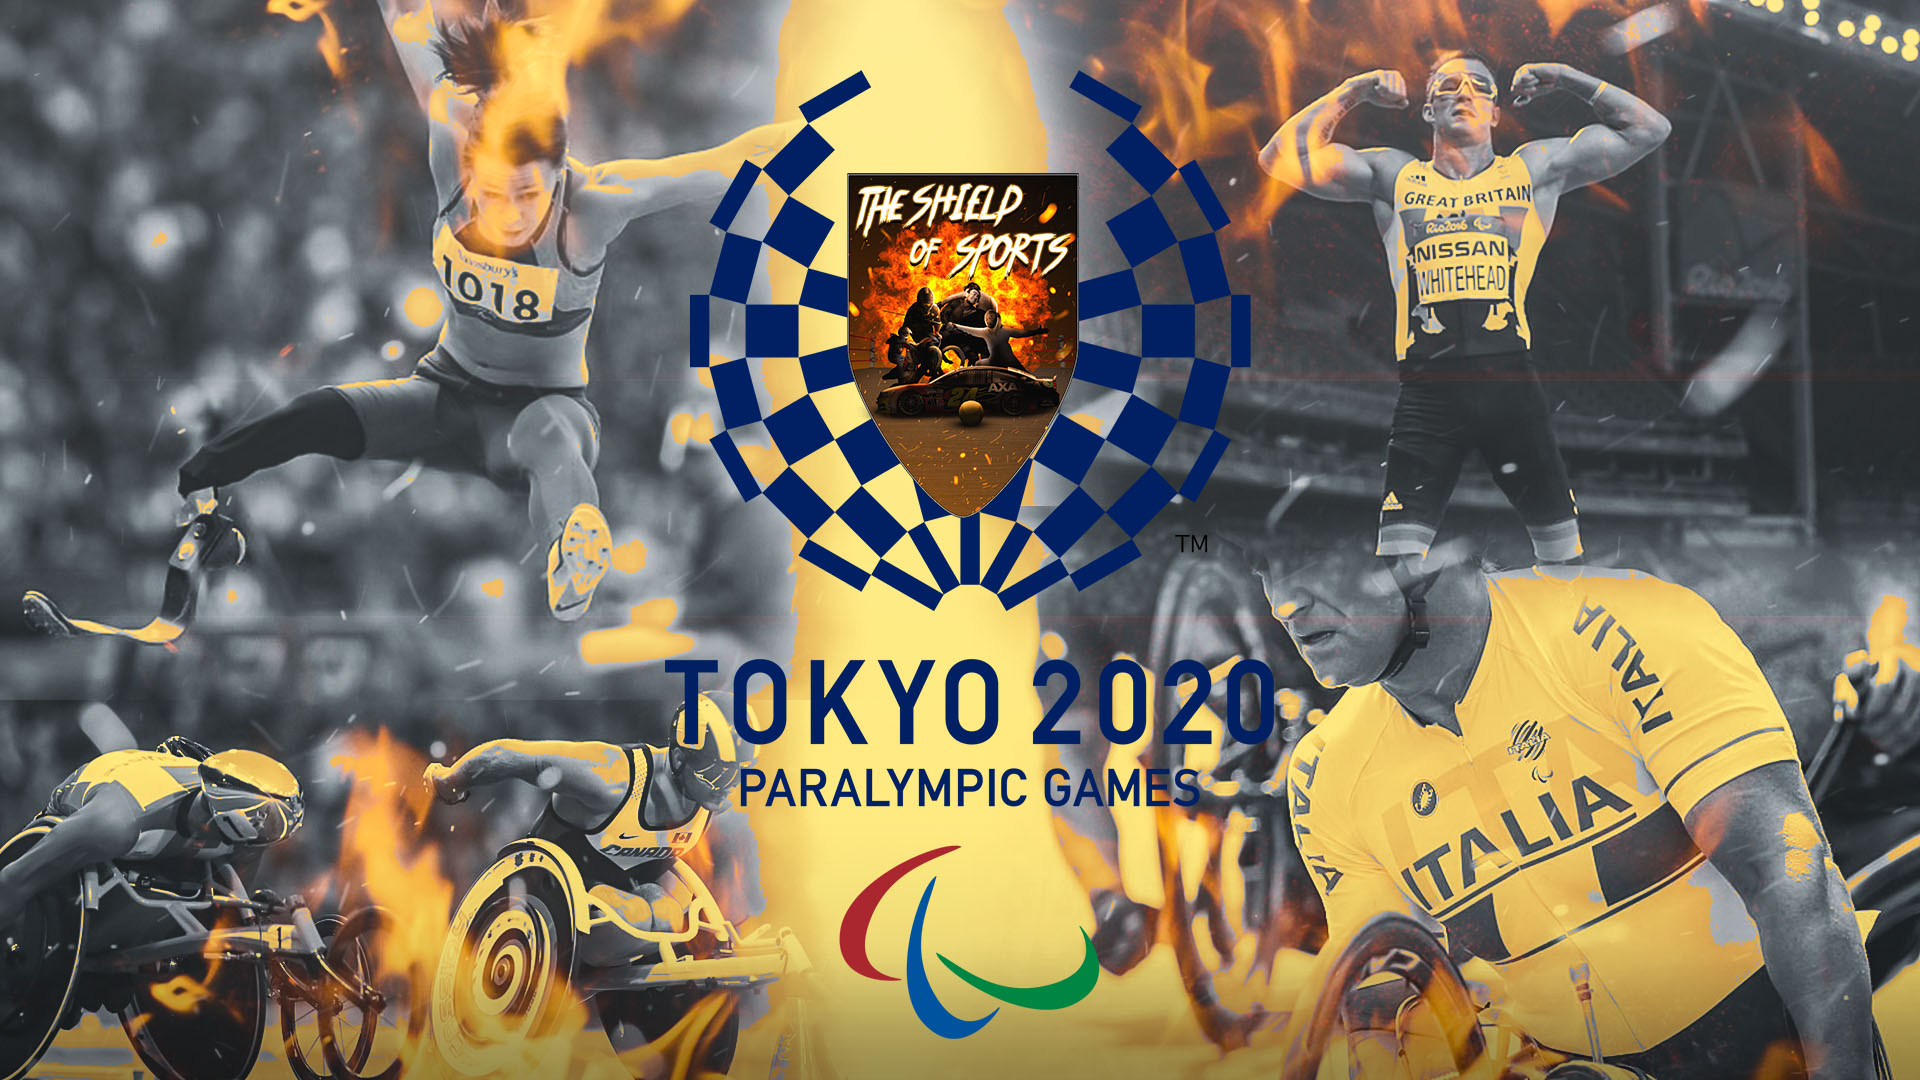 Tennis in carrozzina a Tokyo 2020: Terza giornata di finali